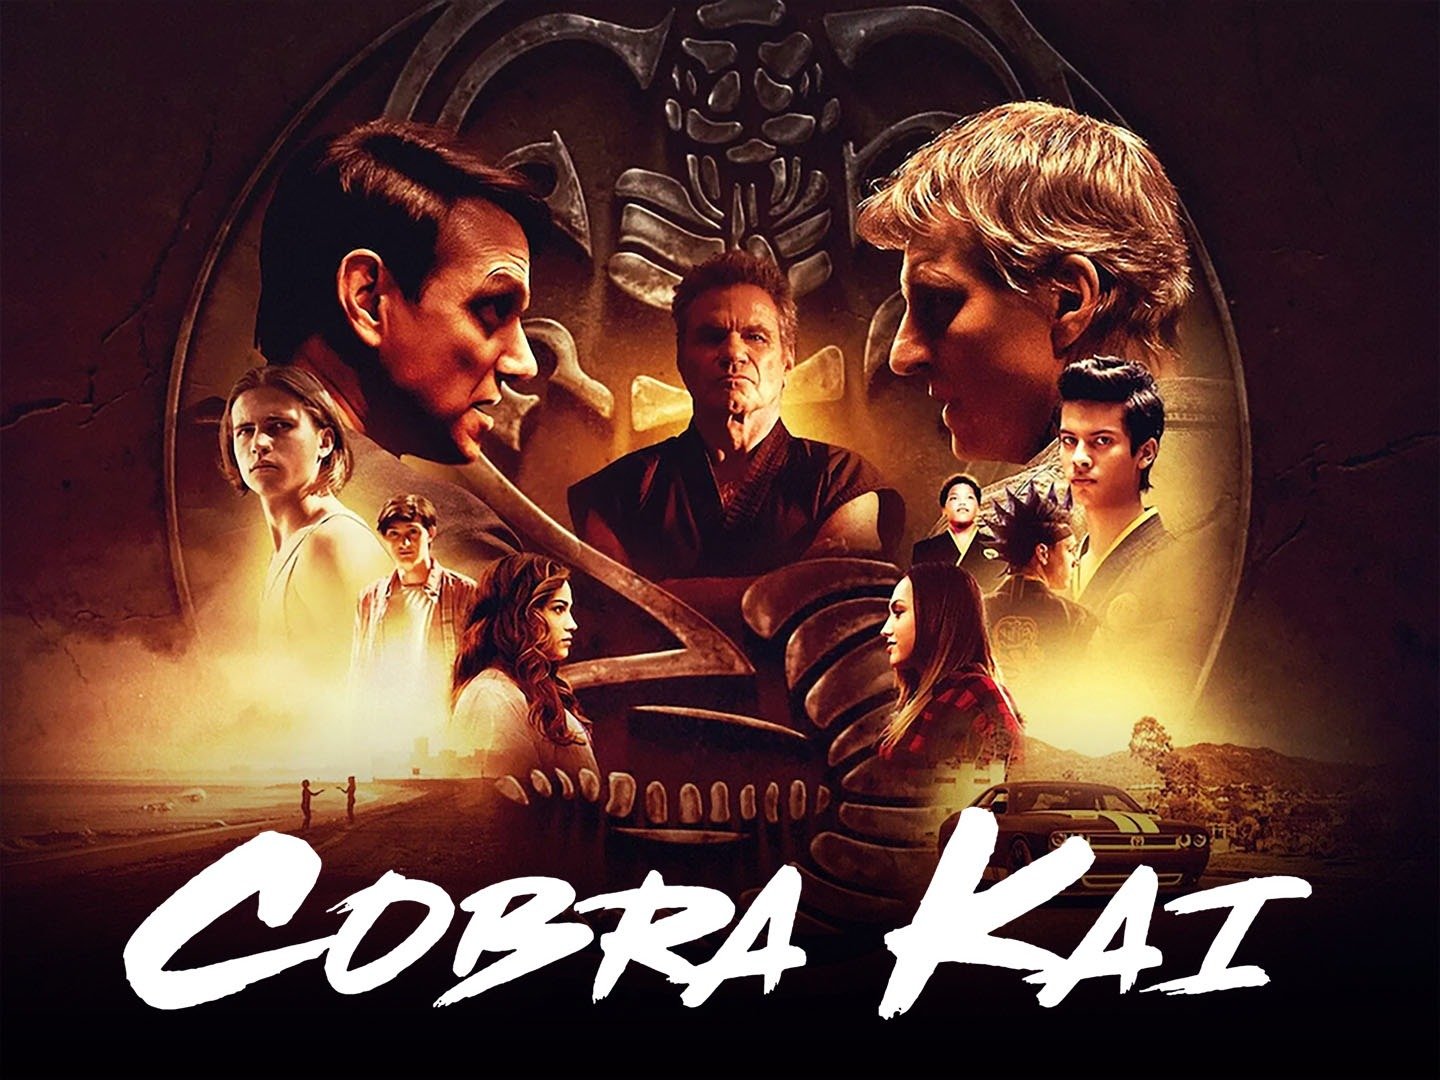 Cobra Kai filmed in Atlanta